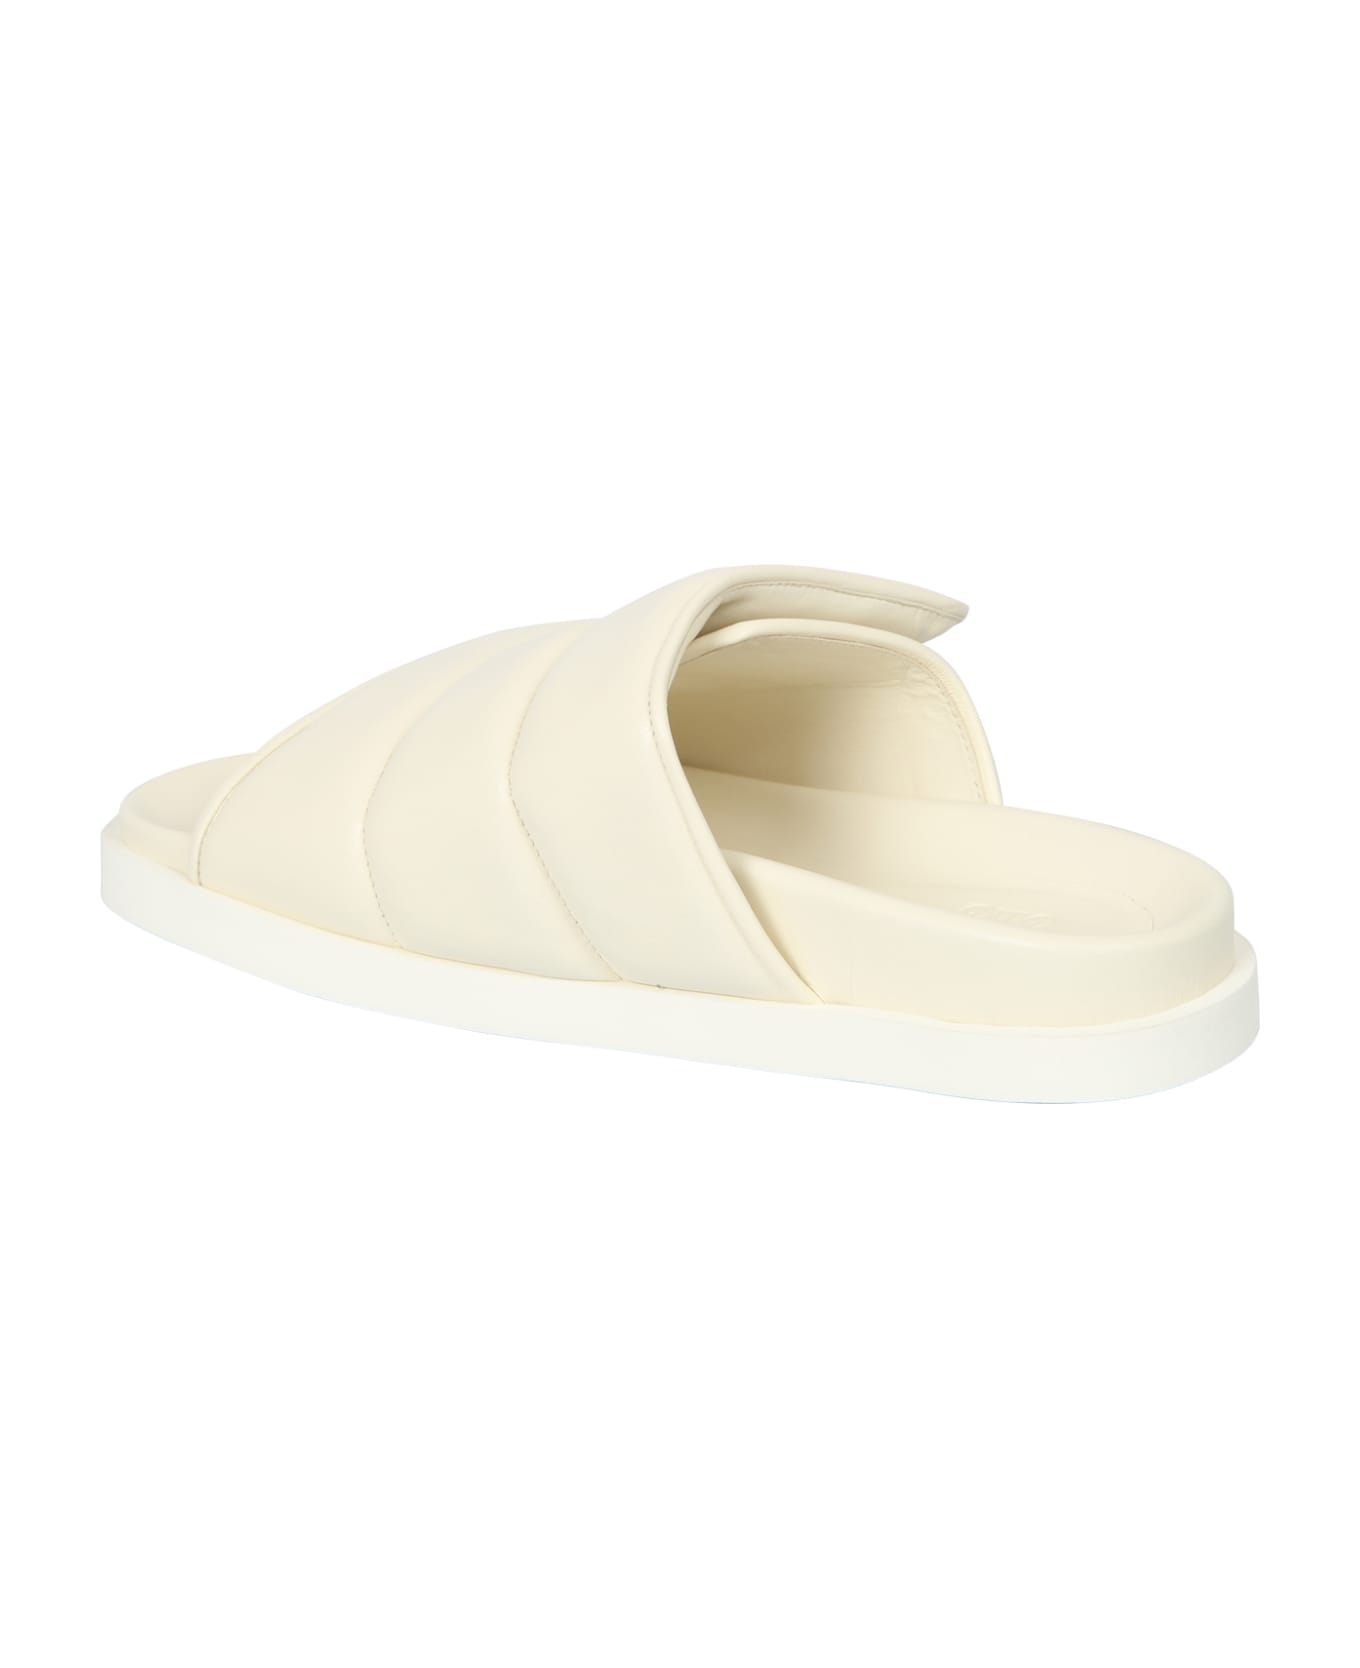 GIA BORGHINI Slipper Puffy Sandals - White サンダル